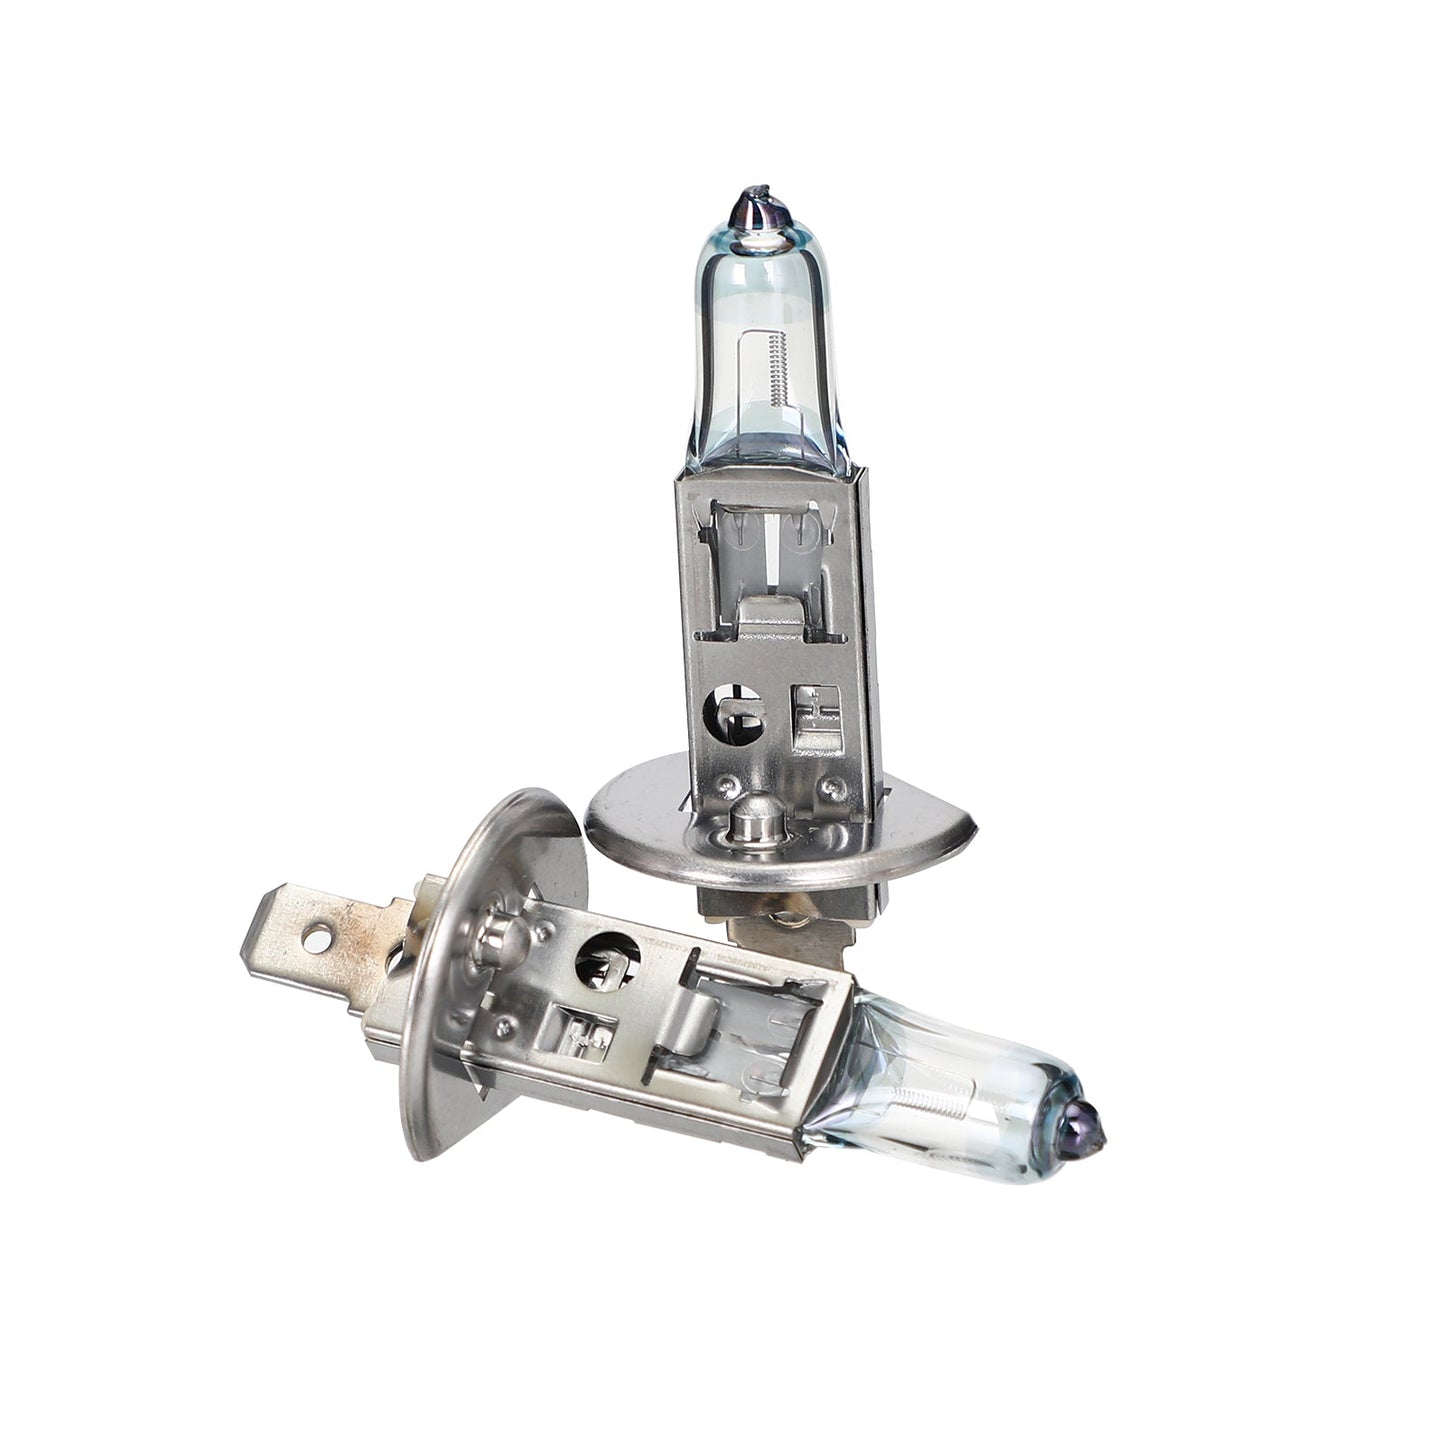 H1 For OSRAM NIGHT BREAKER Car Headlight Lamp Up to +90% Light 12V55W 64150NBR